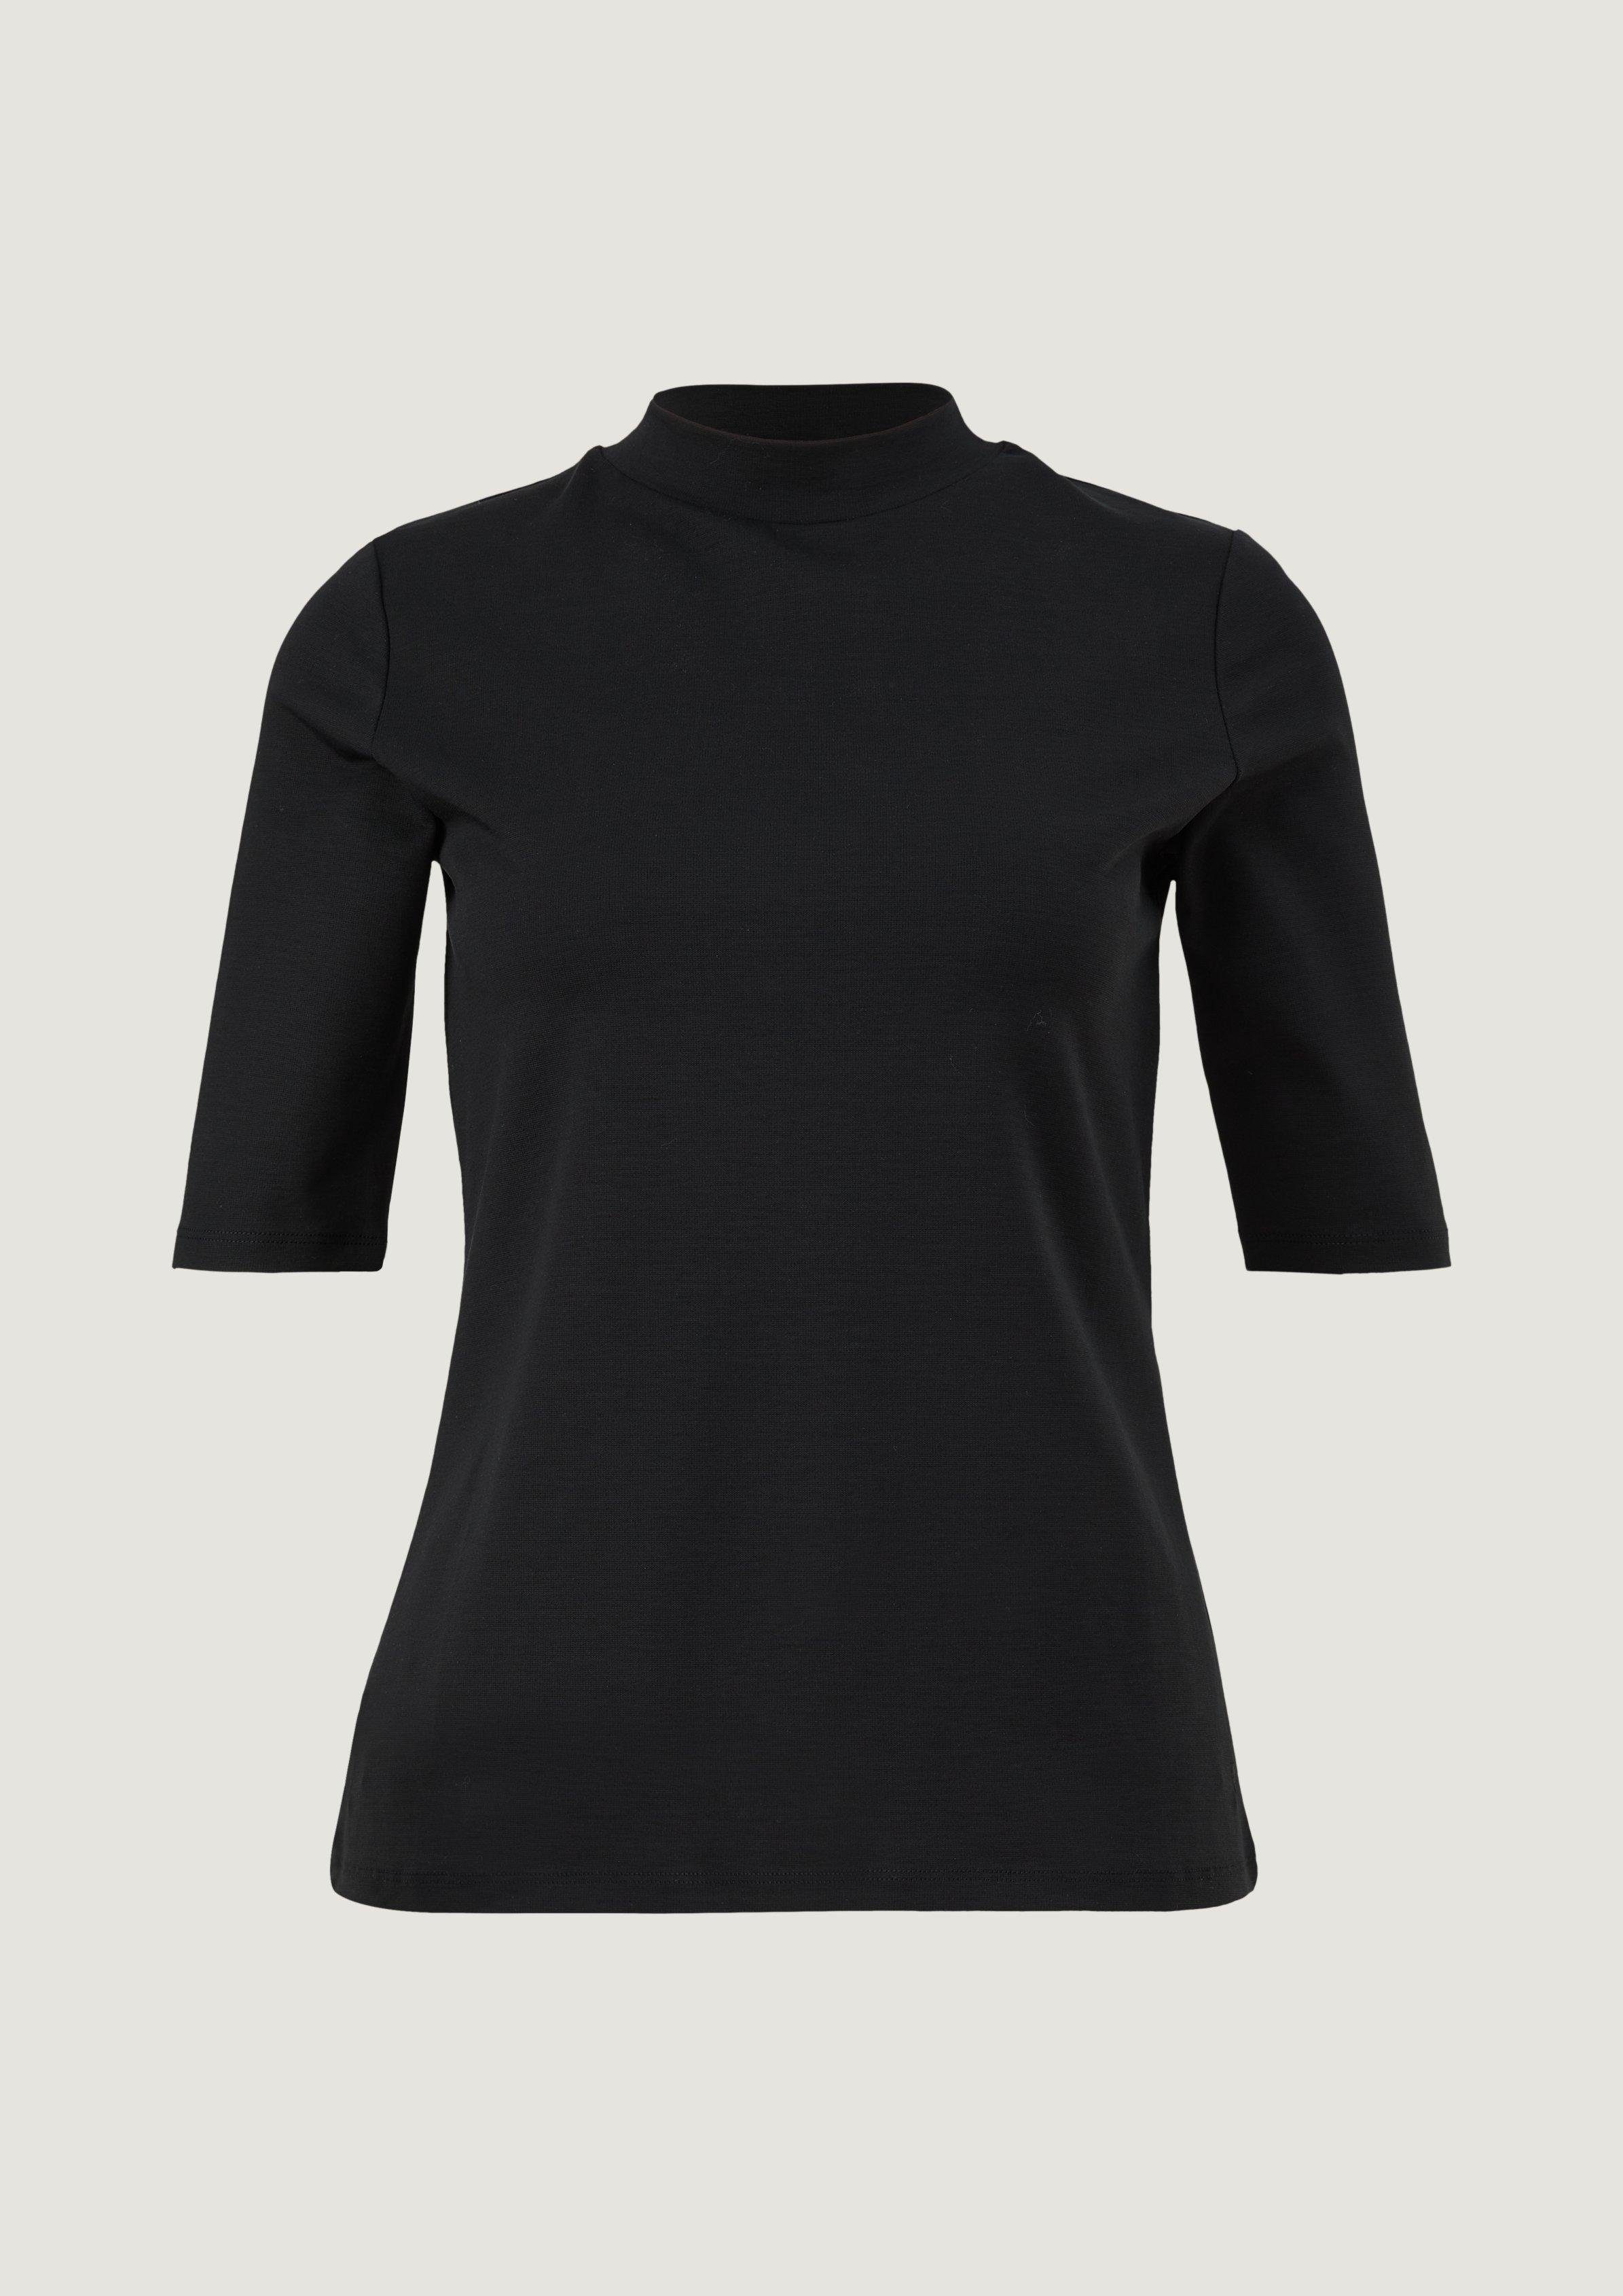 Stehkragen Comma mit Kurzarmshirt T-Shirt schwarz